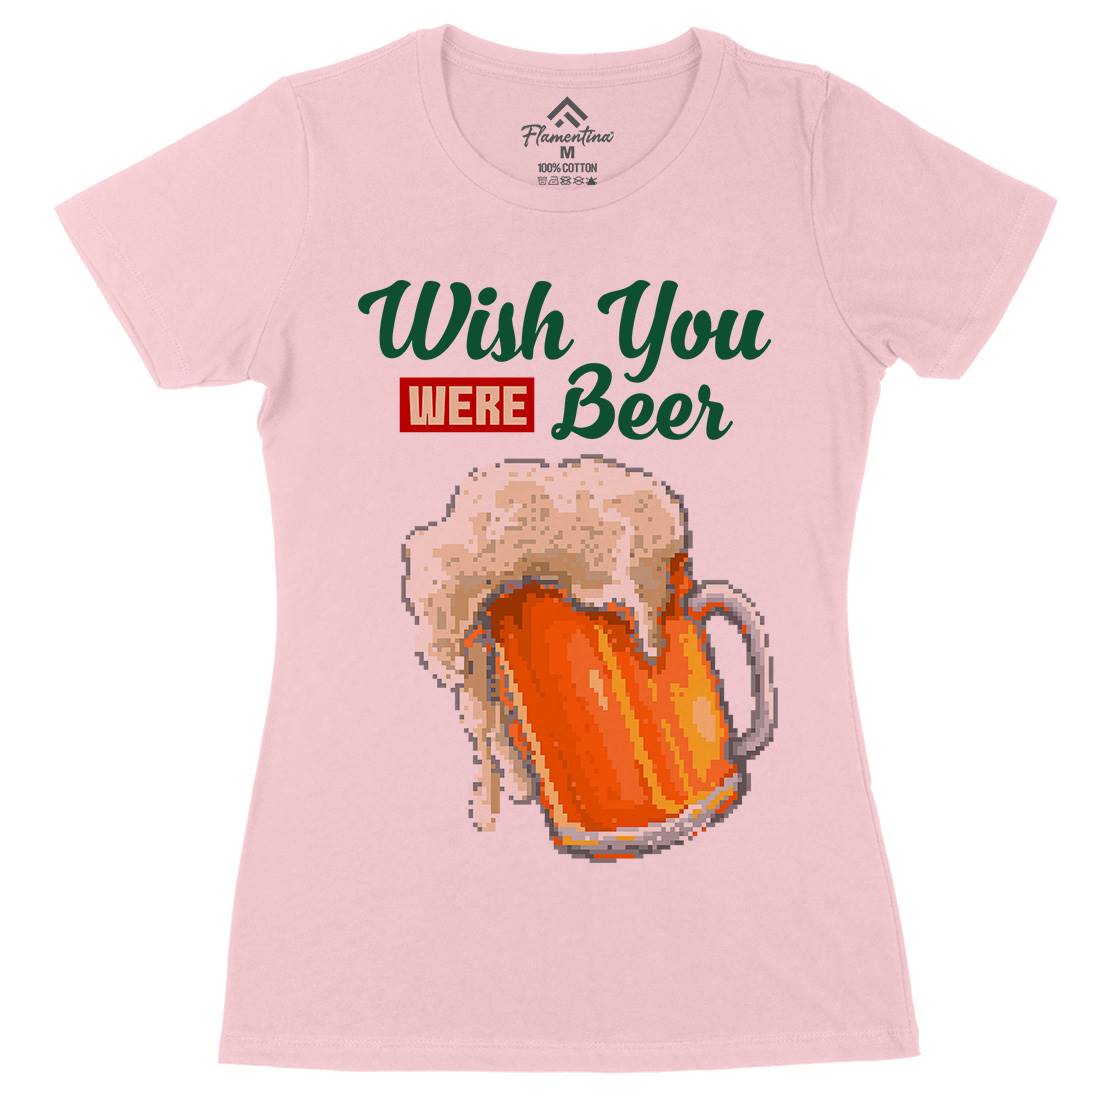 Wish Beer Womens Organic Crew Neck T-Shirt Drinks B980